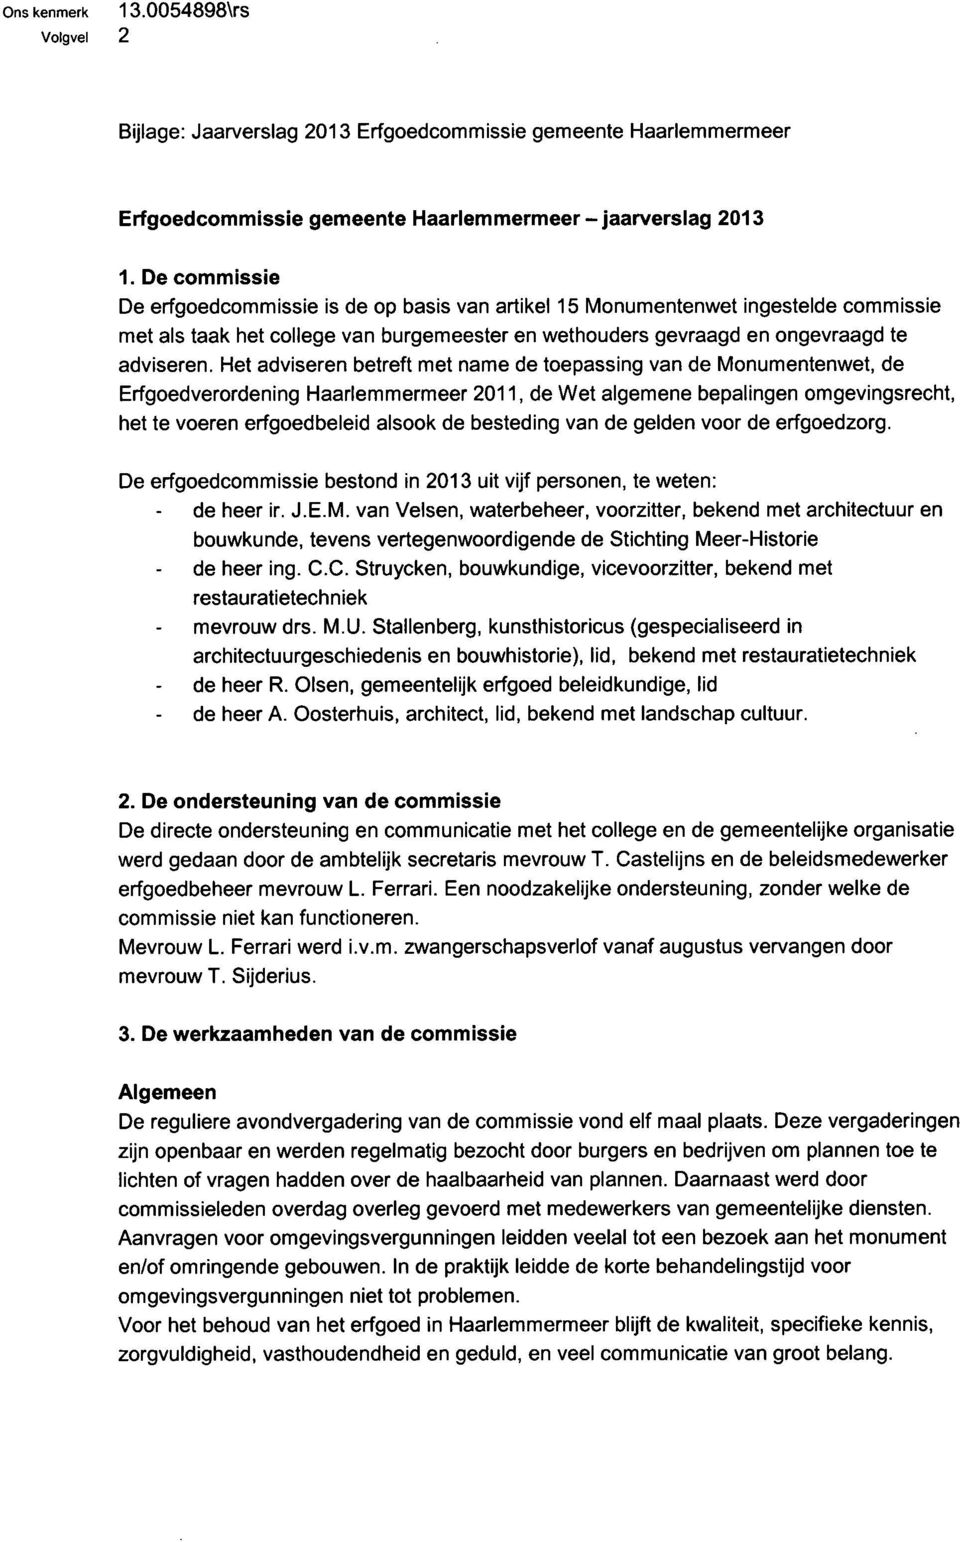 Het adviseren betreft met name de toepassing van de Monumentenwet, de Erfgoedverordening Haarlemmermeer 2011, de Wet algemene bepalingen omgevingsrecht, het te voeren erfgoedbeleid alsook de